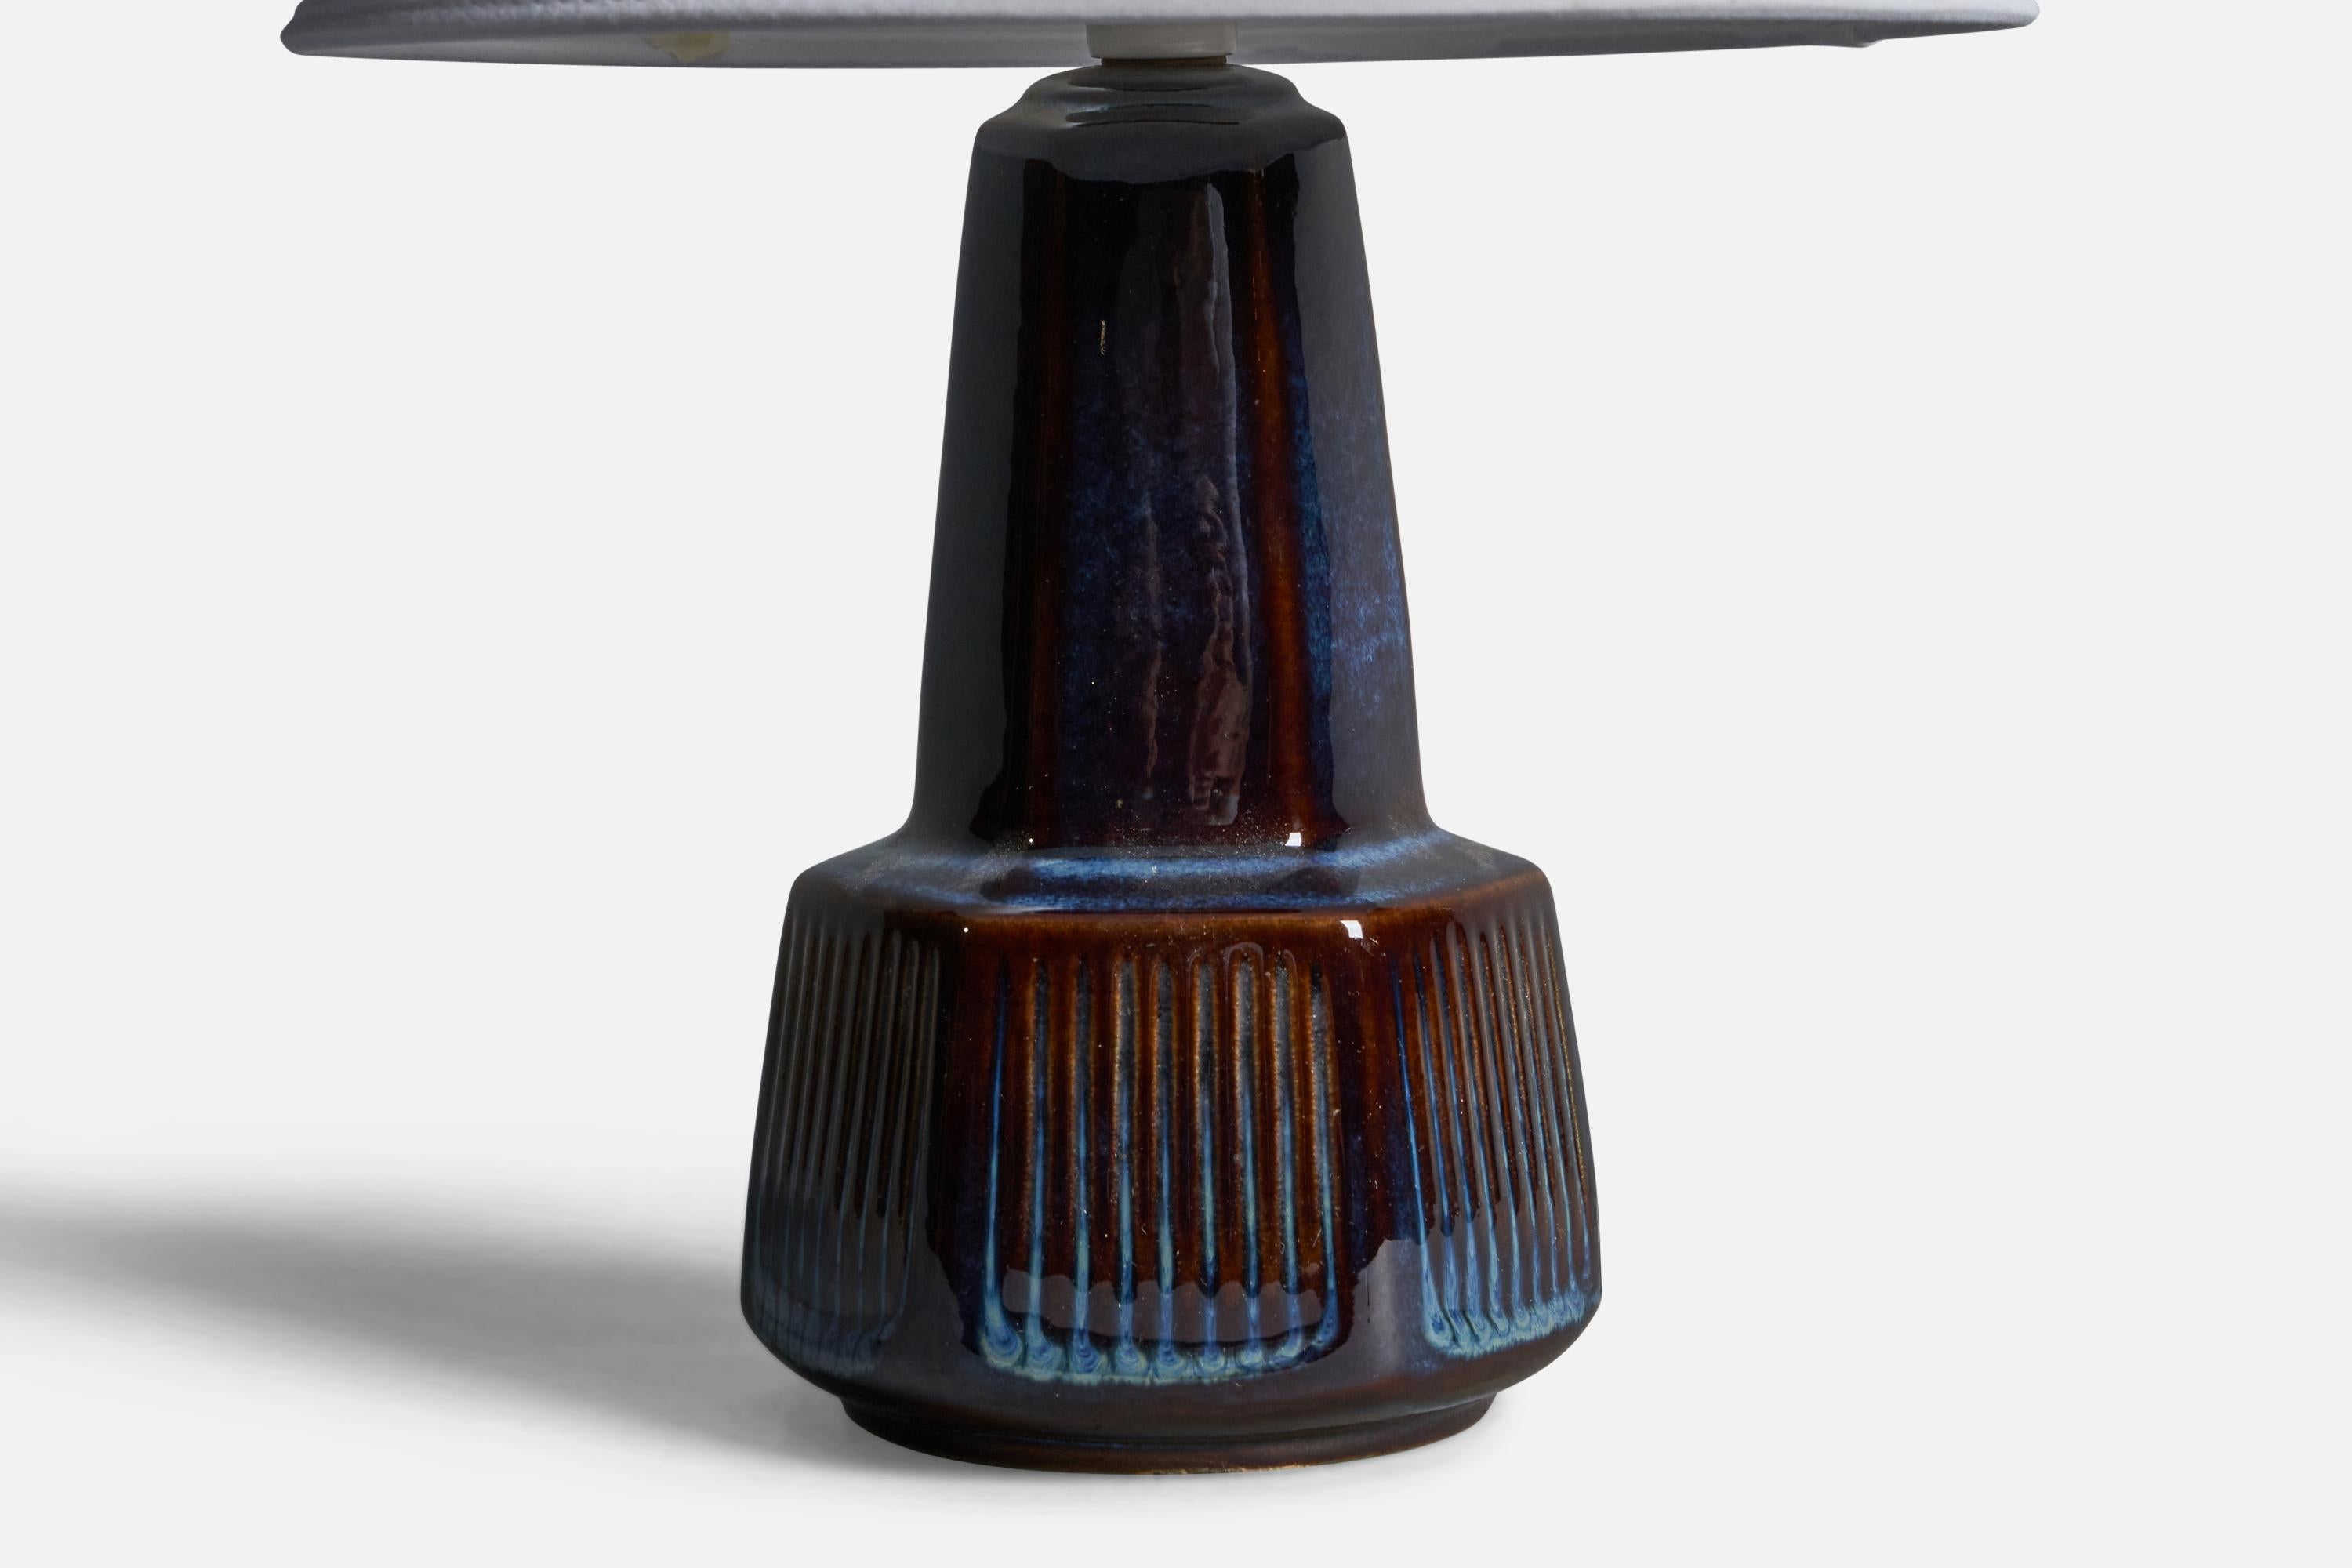 Lampe de table en grès émaillé bleu, conçue et produite par 
Søholm, Bornholm, Danemark, années 1960.

Dimensions de la lampe (pouces) : 10